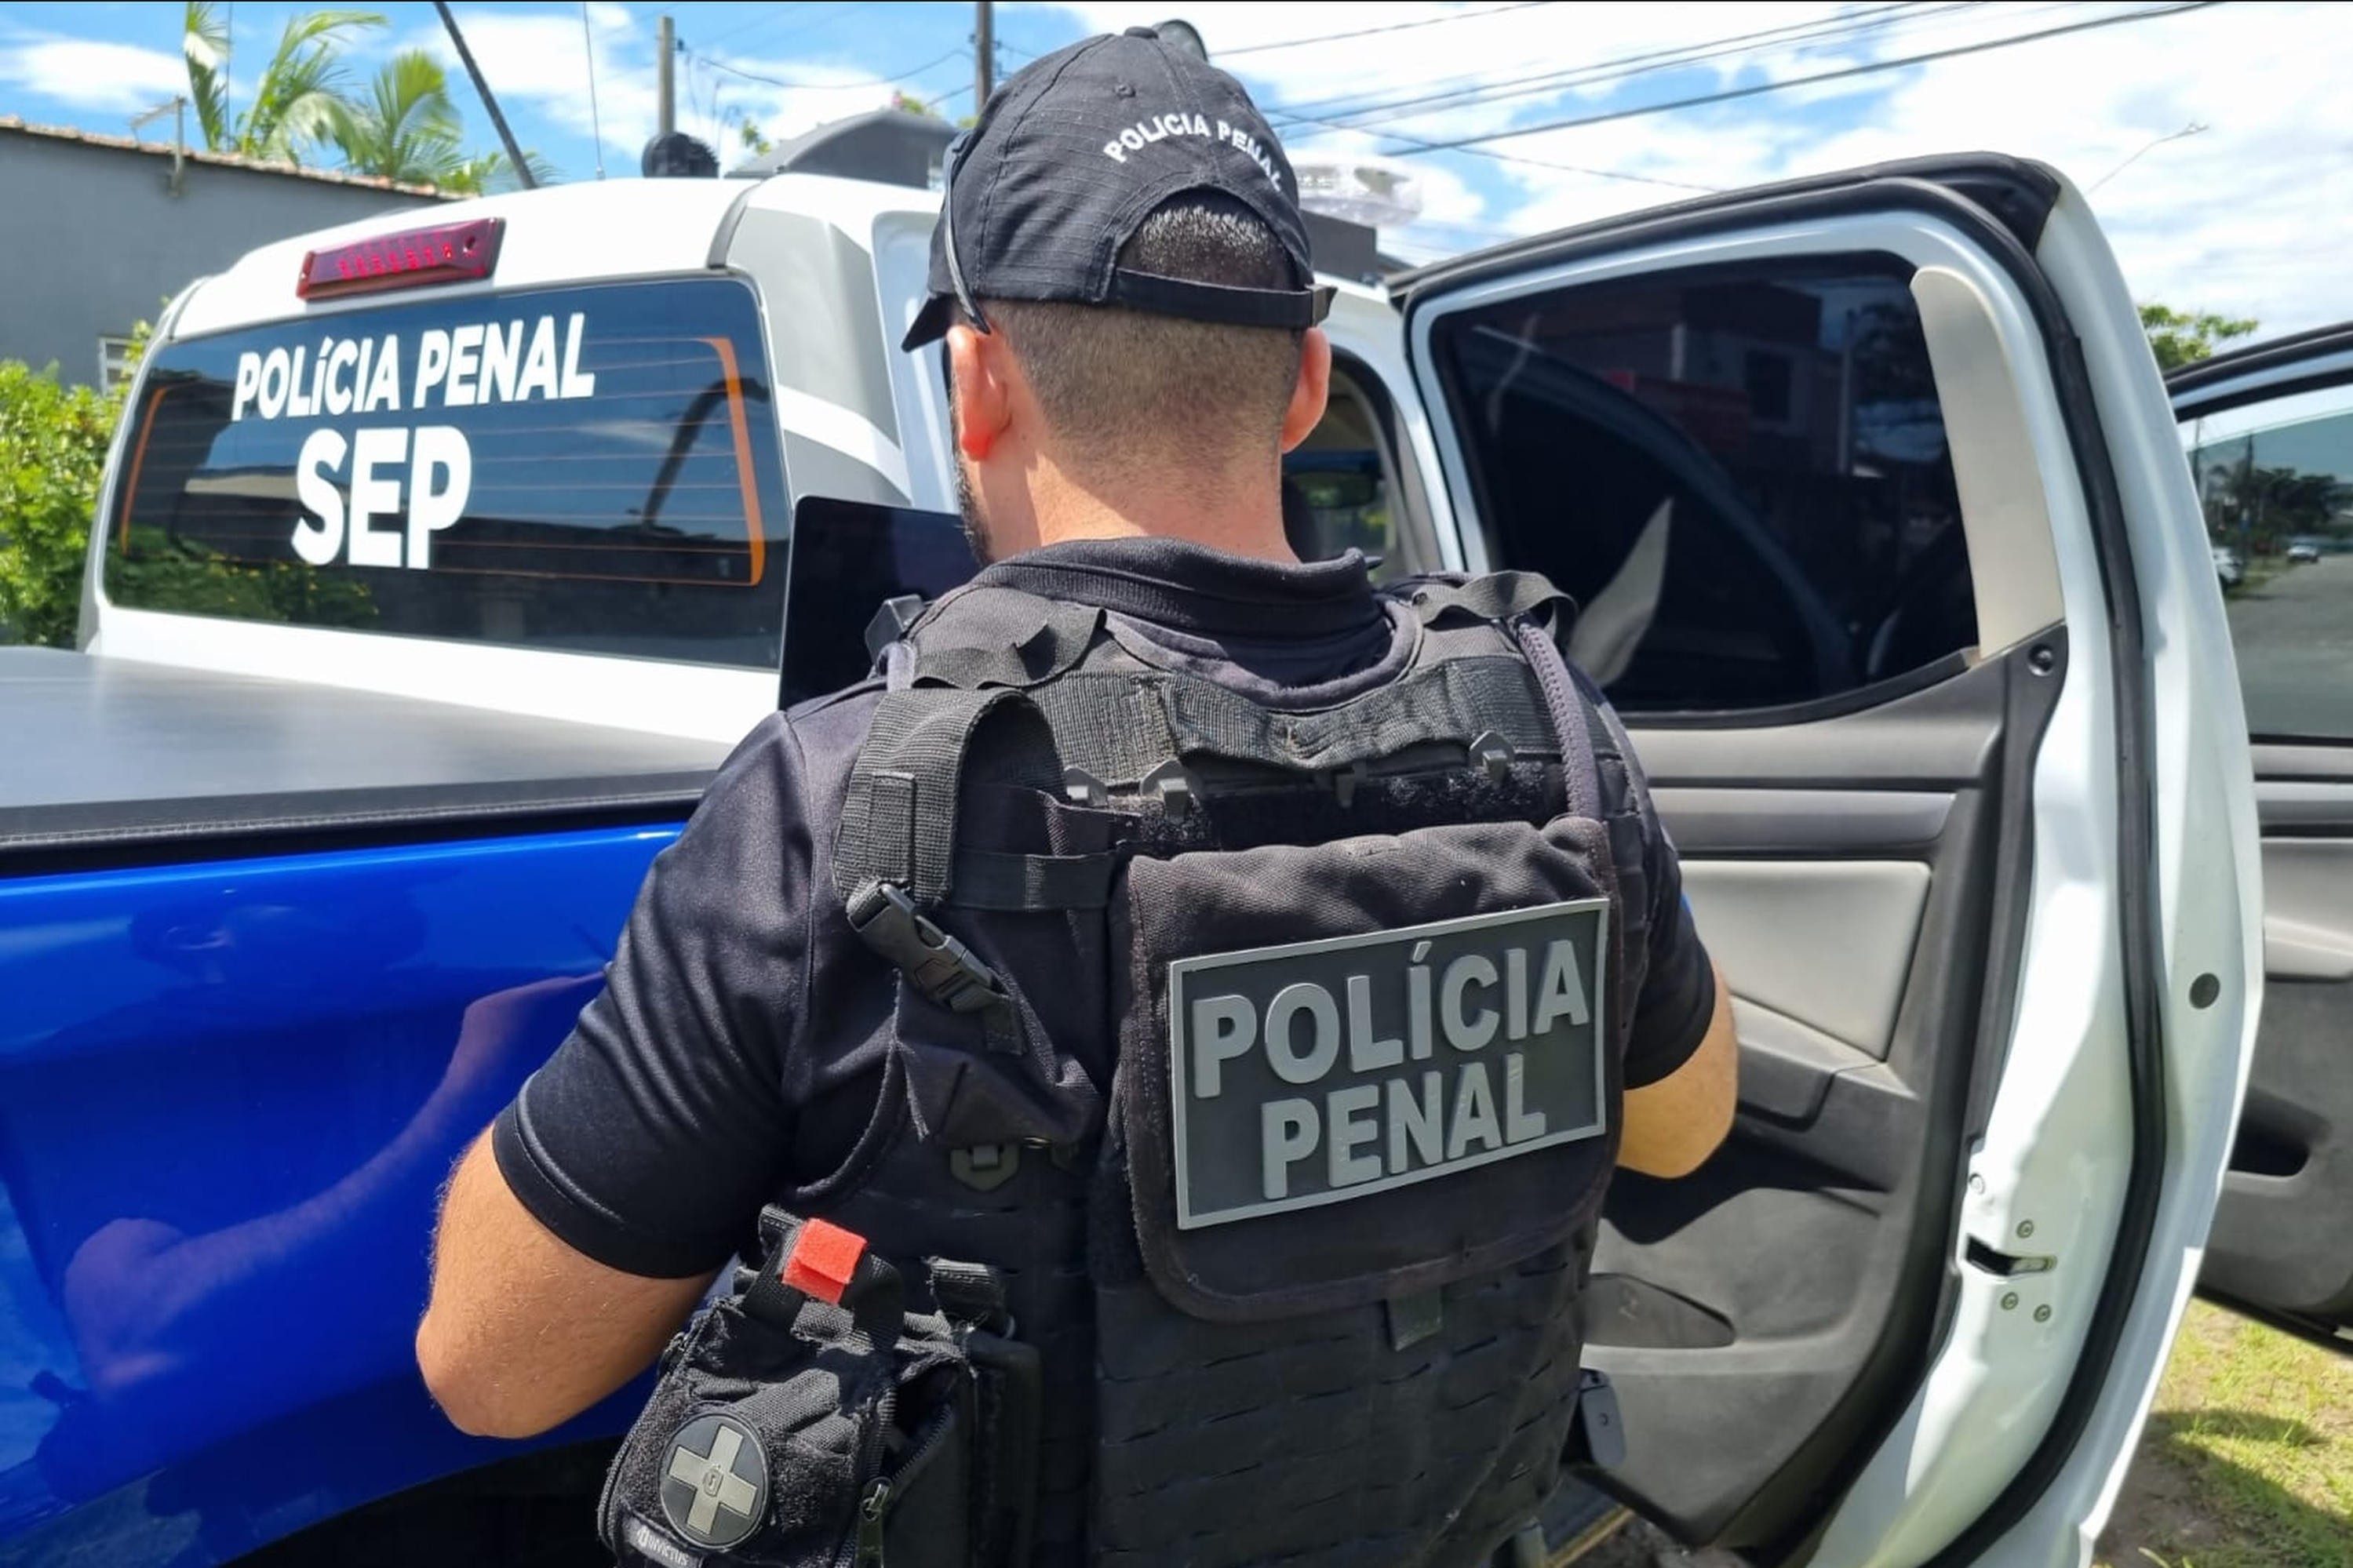 Polícia Penal do Paraná abre concurso público com 7 vagas; veja como se inscrever 